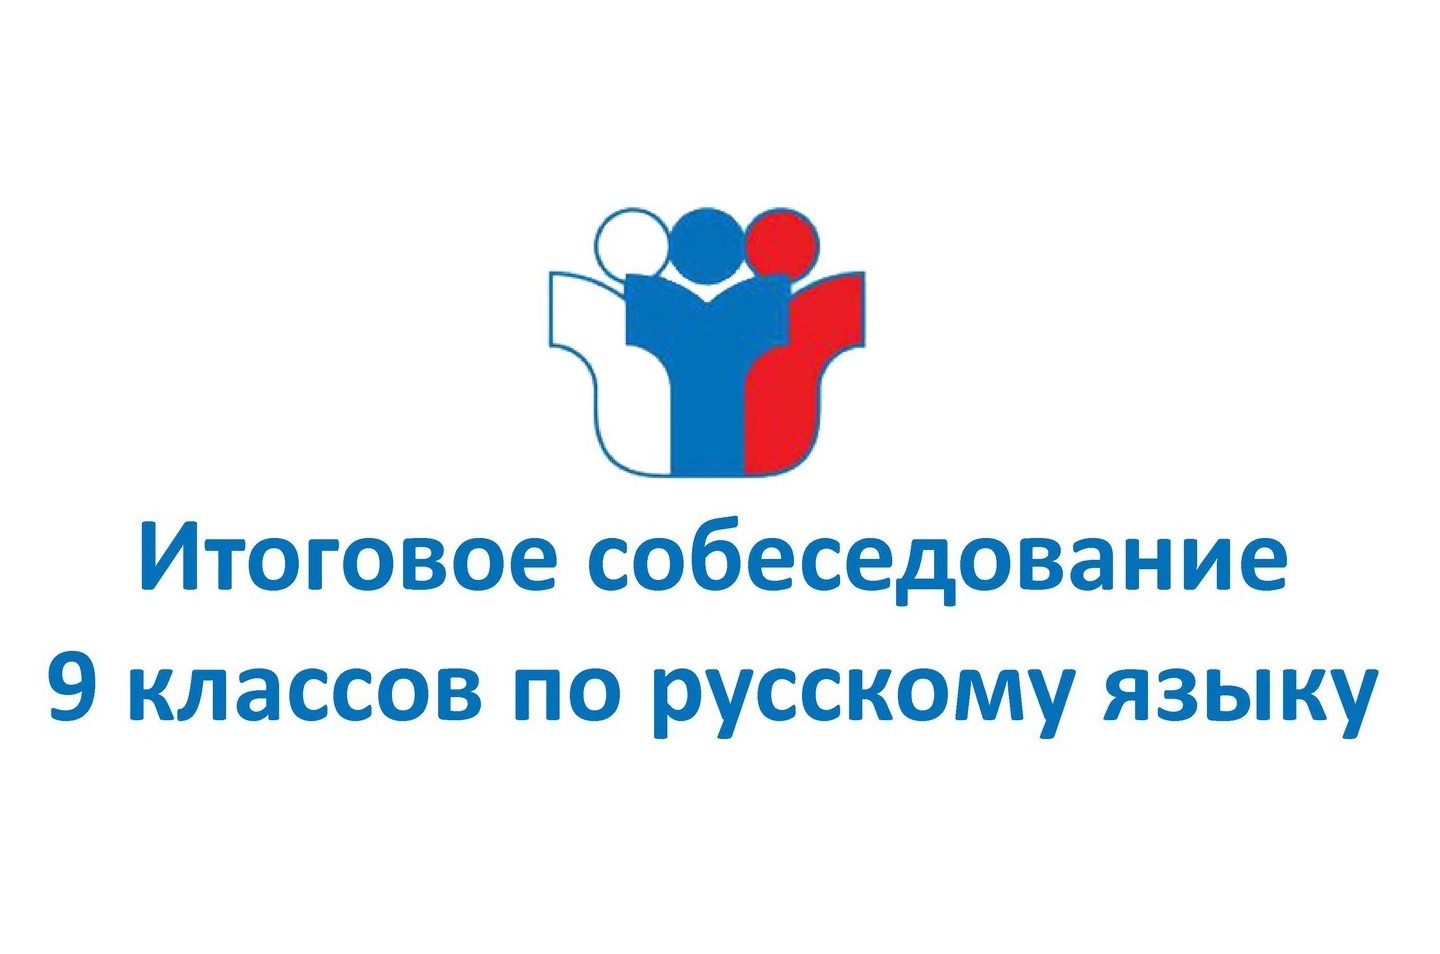 Выпускник 2023: итоговое собеседование по русскому языку пройдет 8 февраля 2023 года.